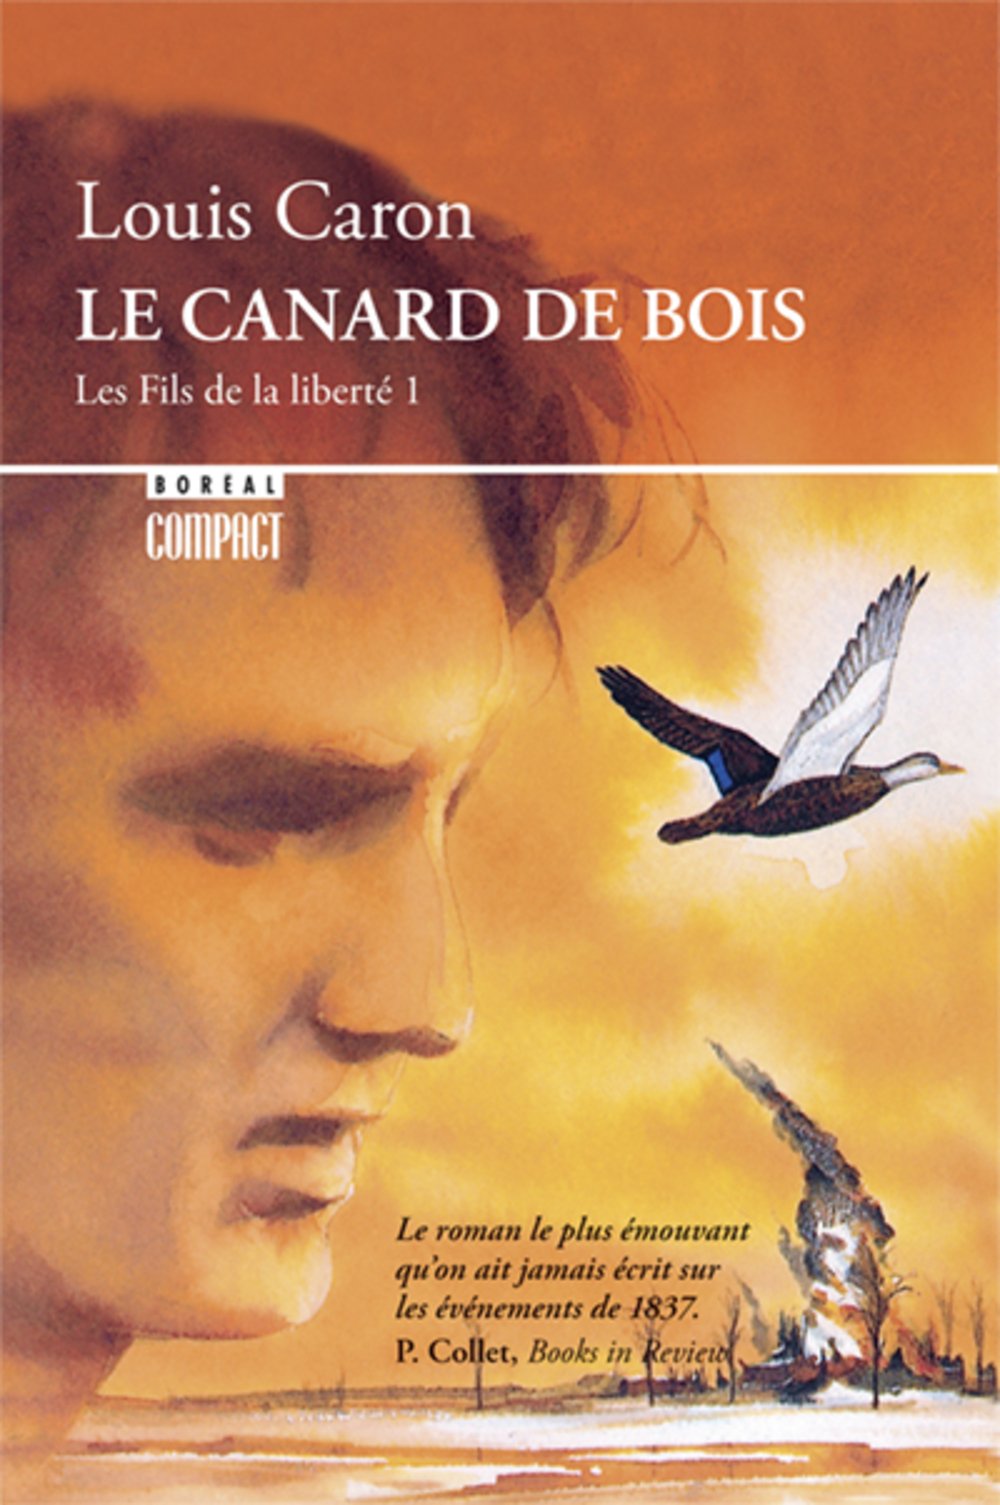 Livre ISBN 2890522822 Les fils de la liberté # 1 : Le canard de bois (Louis Caron)